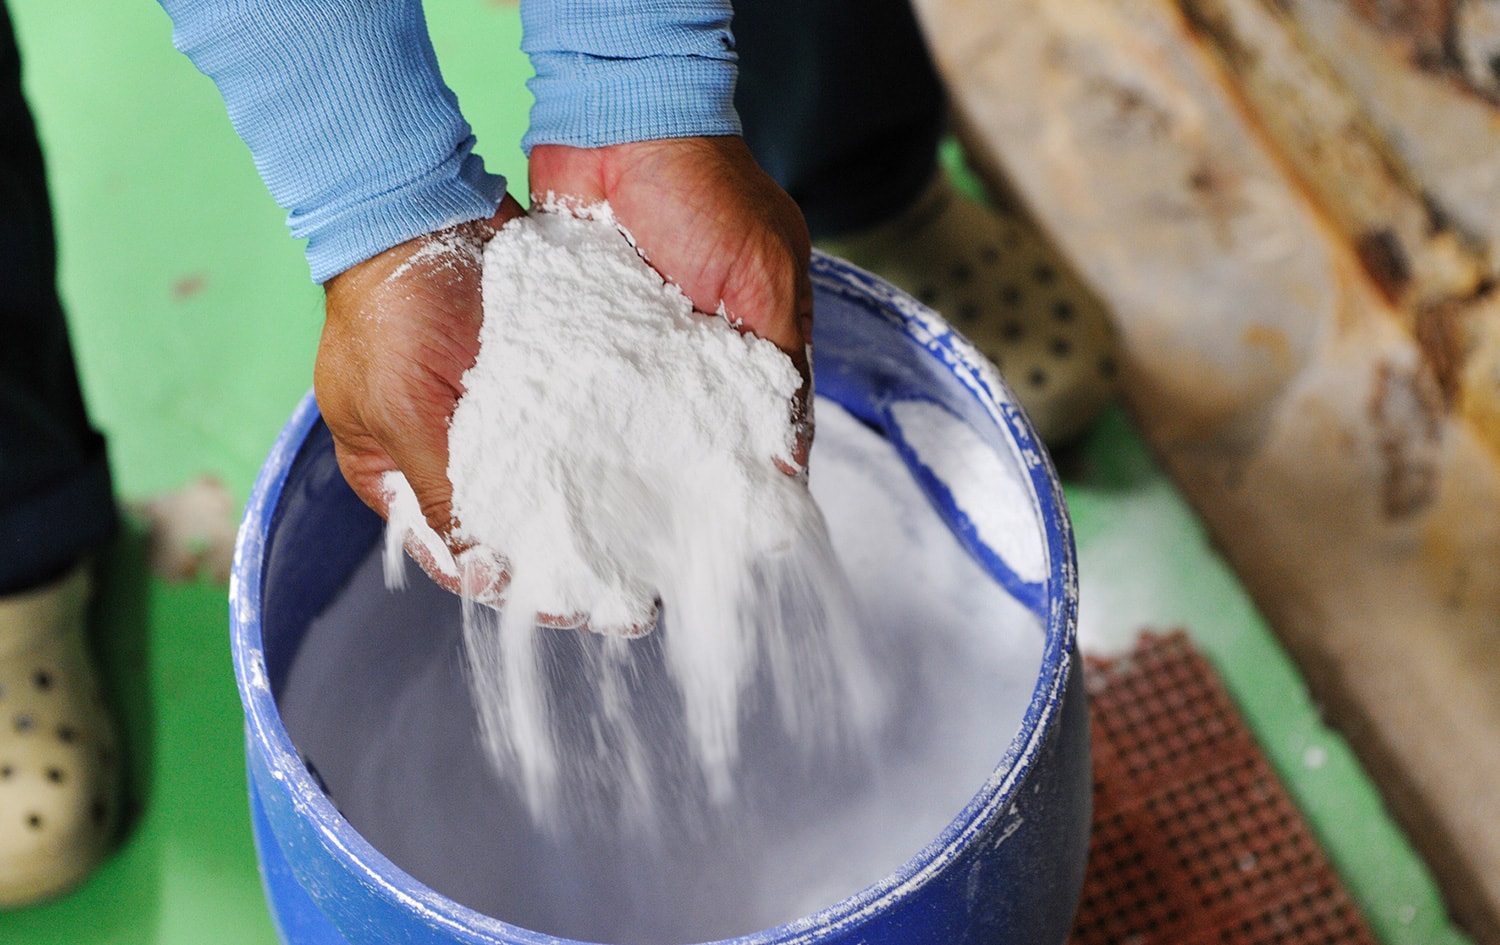 Vì muối tuyết Nhật Bản rất dễ sử dụng nên nó nhanh chóng tan chảy vào bất kỳ thành phần nào khác, và tốt nhất nên dùng muối tuyết để làm món tempura (đồ chiên) và onigiri (cơm nắm).